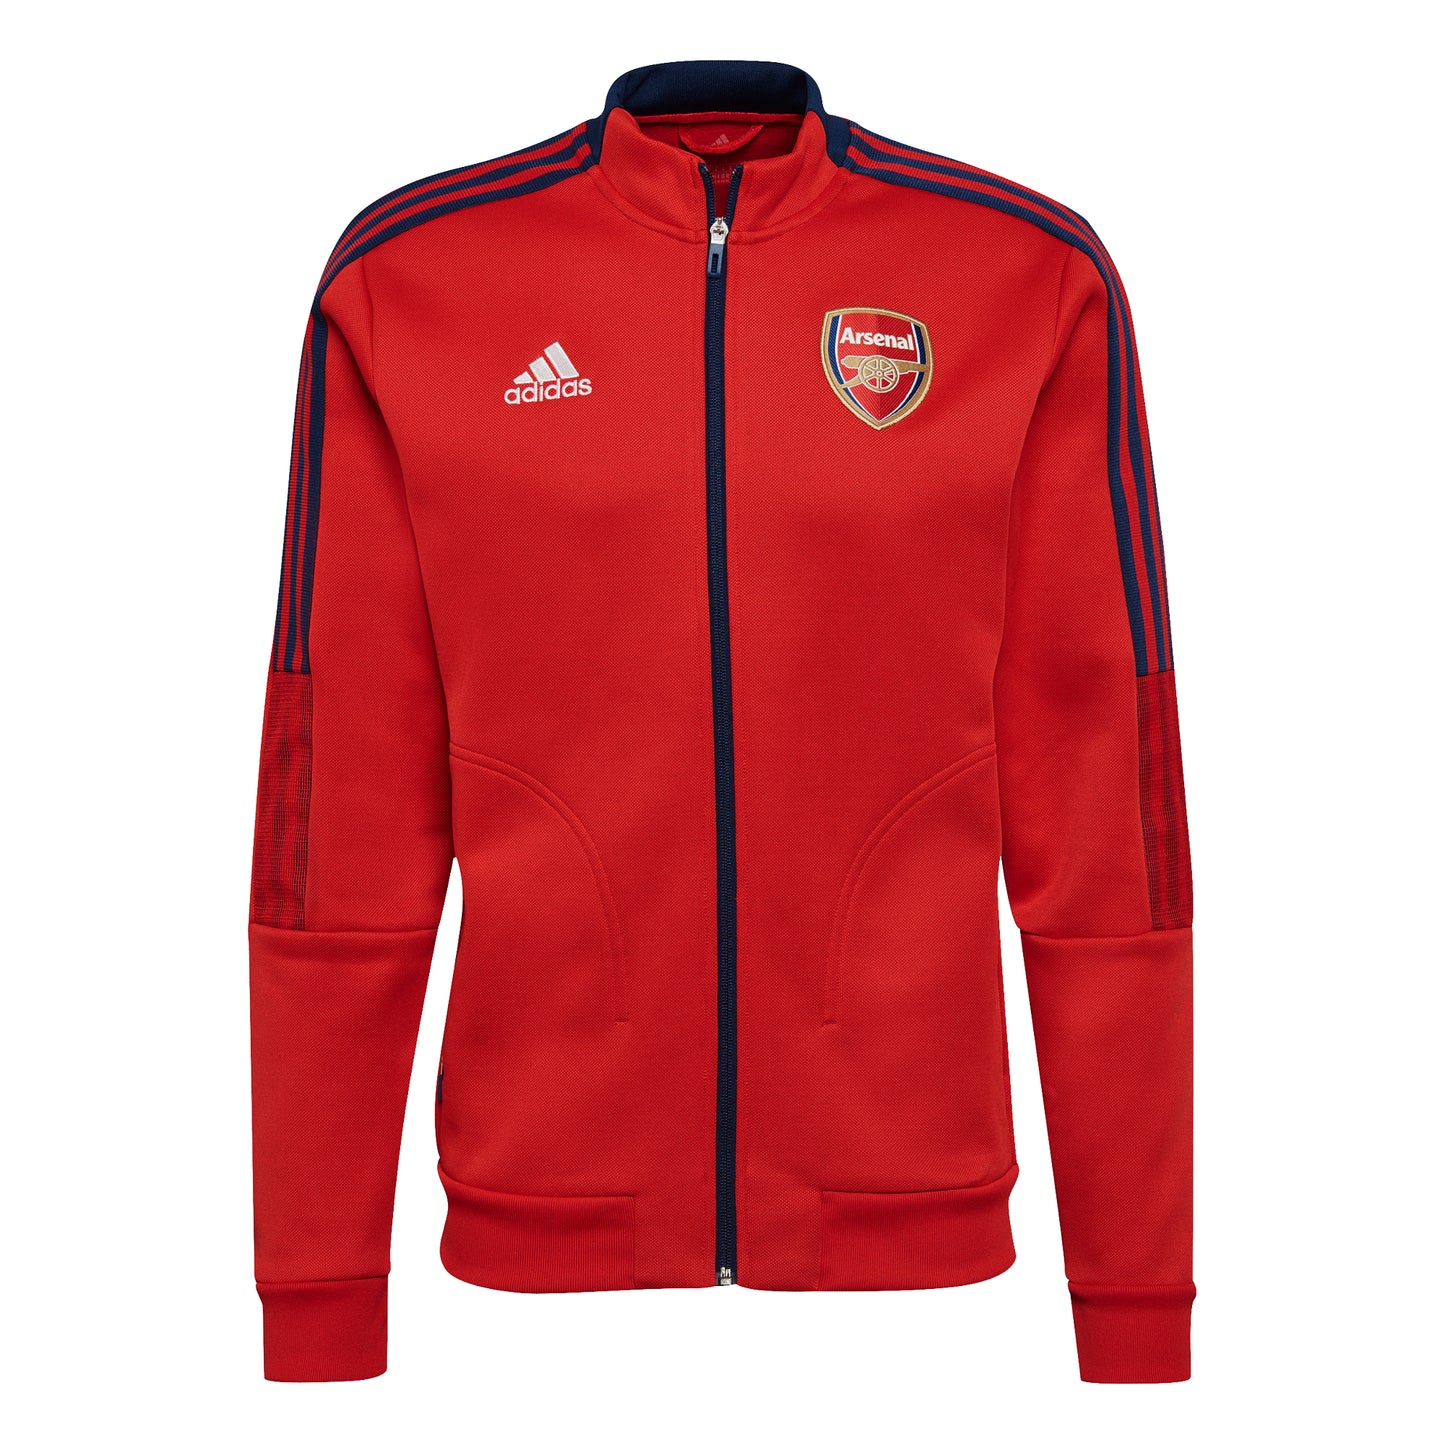 Adidas Arsenal Tiro Anthem Jacket